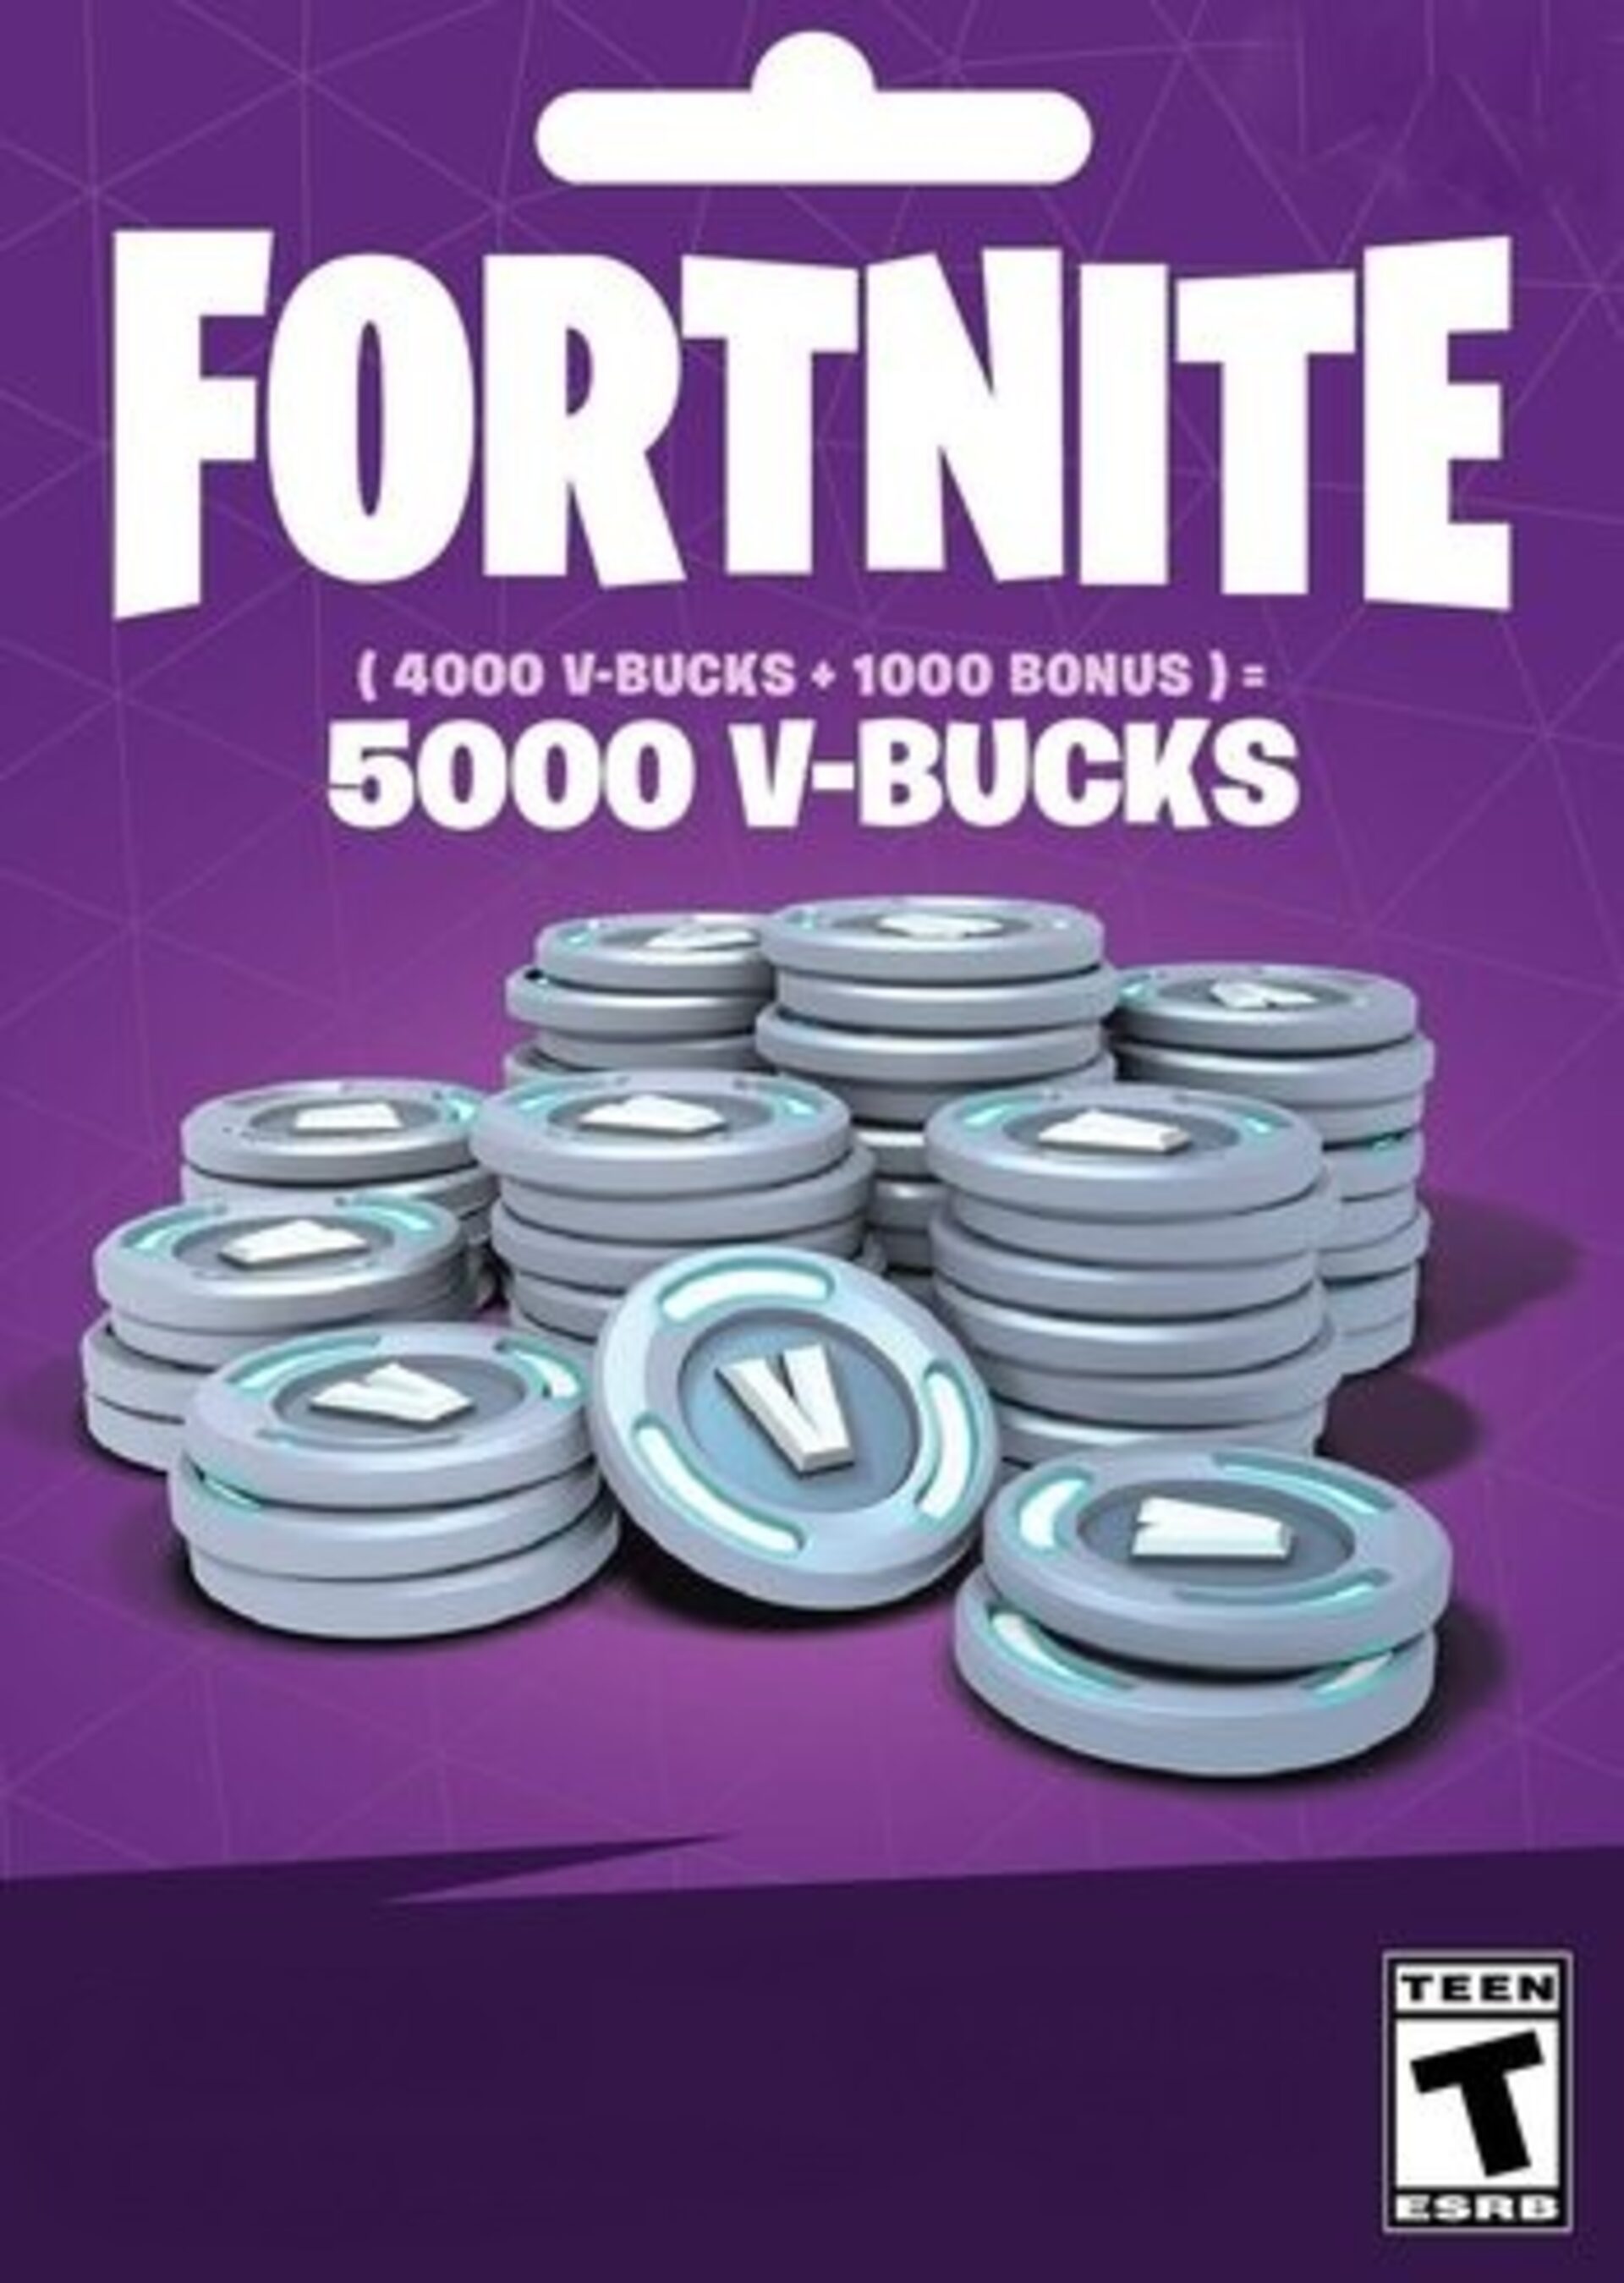 Fortnite 5000 V-Bucks carte cadeau Epic Games clé, FR